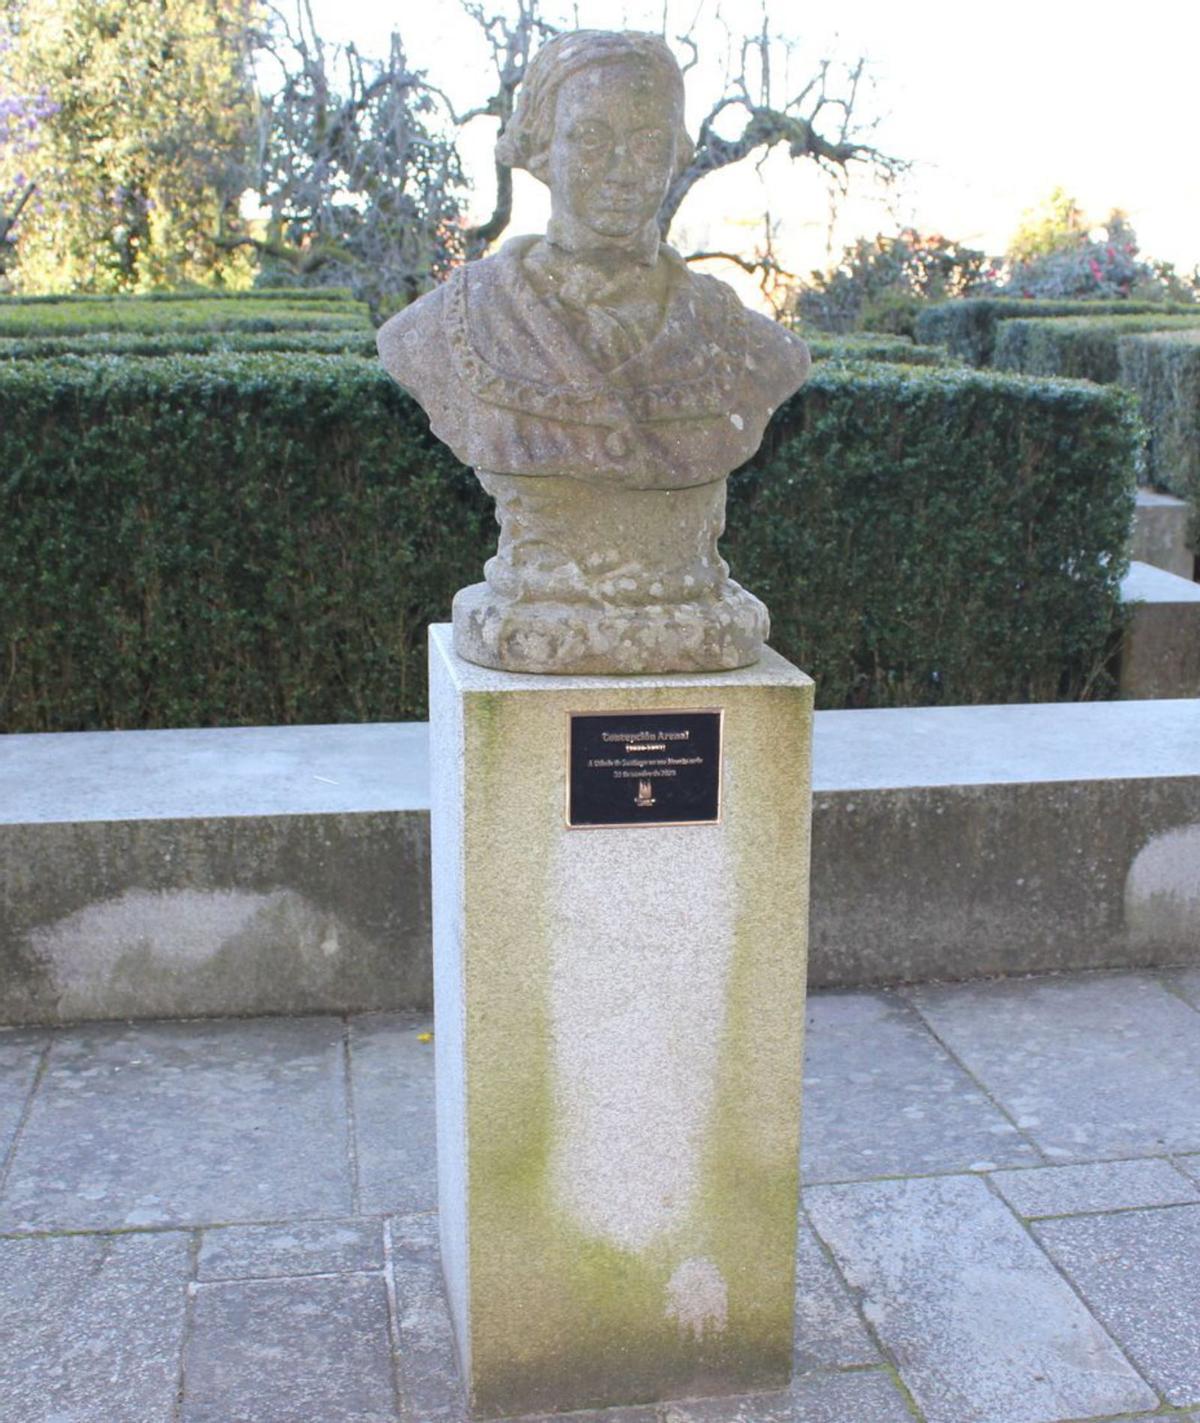 Busto de Concepción Arenal, situado orixinalmente na Alameda / cedida